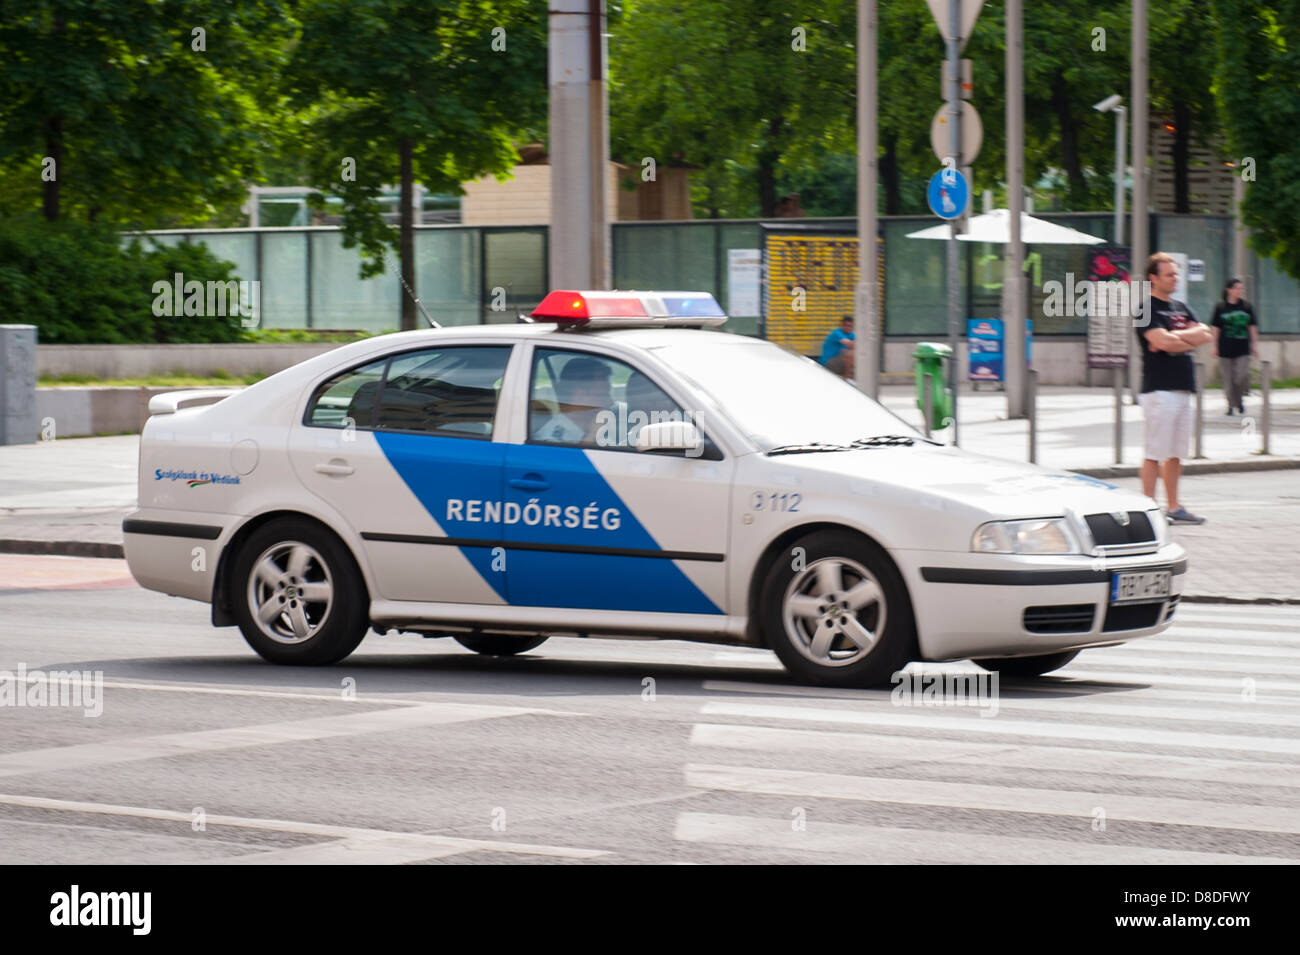 Ungarn Budapest bewegen weiss blau Polizei Polizist auto Rendorseg auf Straße street scene Stockfoto